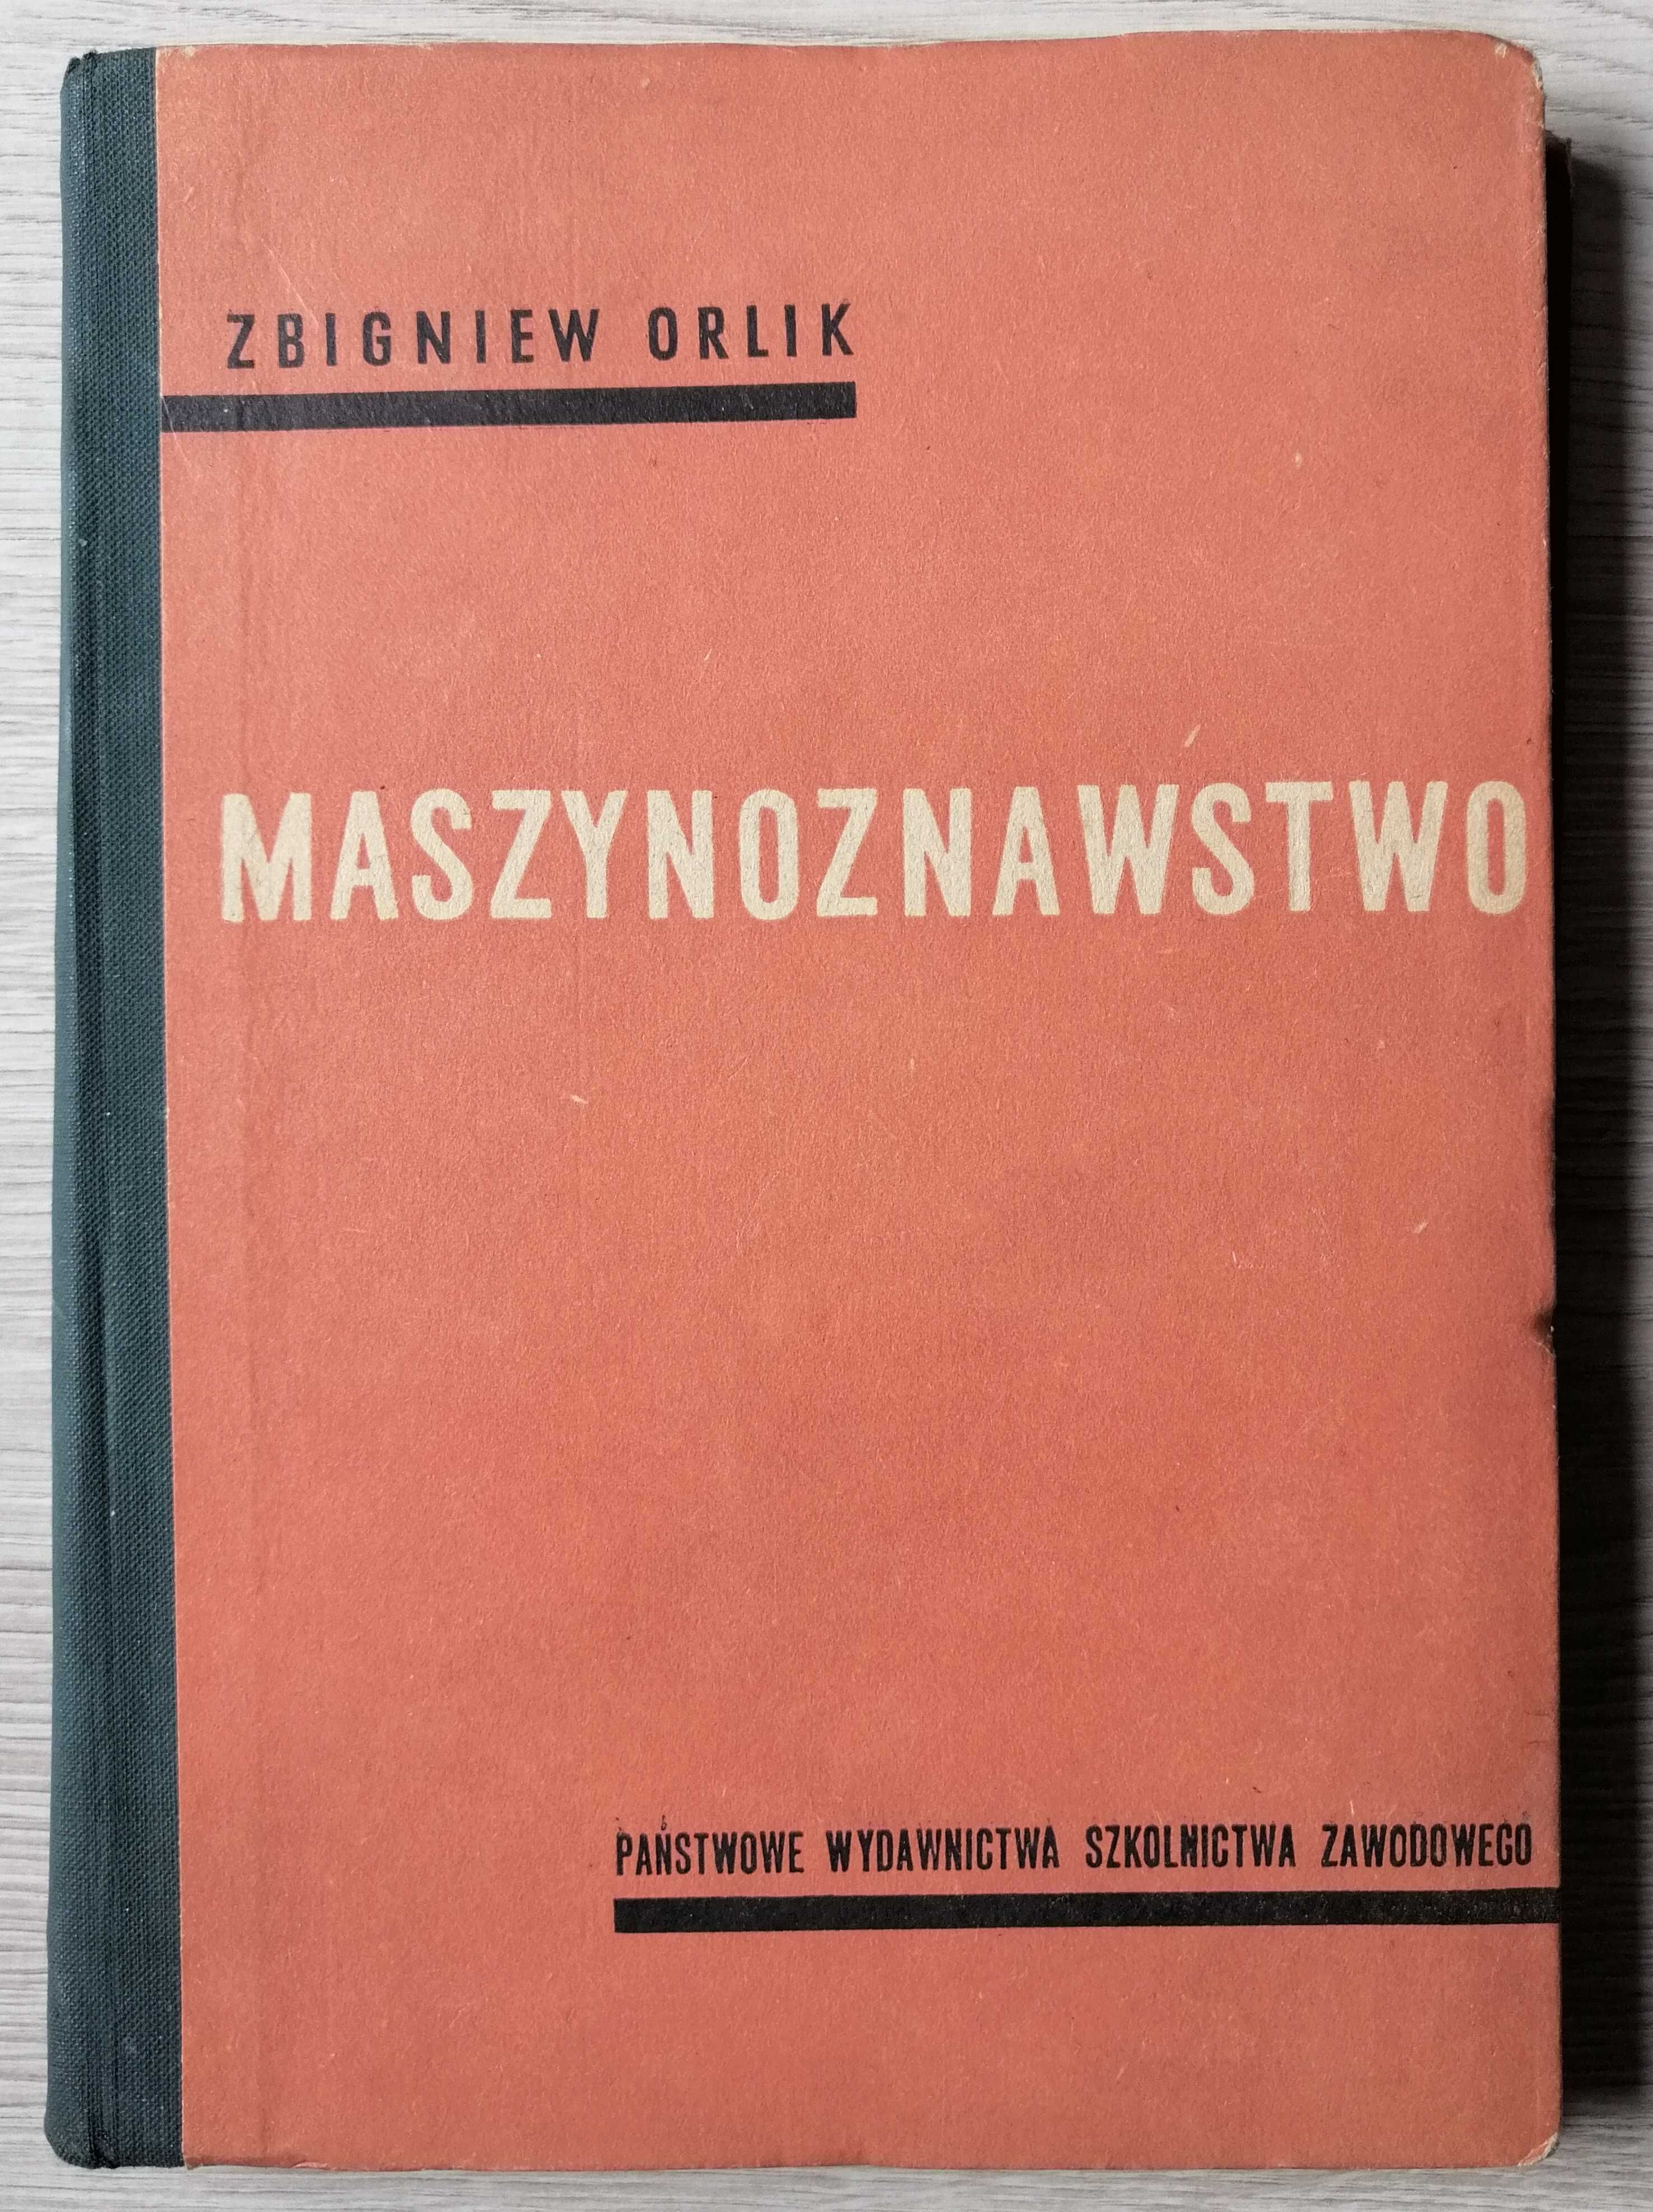 Zbigniew Orlik Maszynoznawstwo